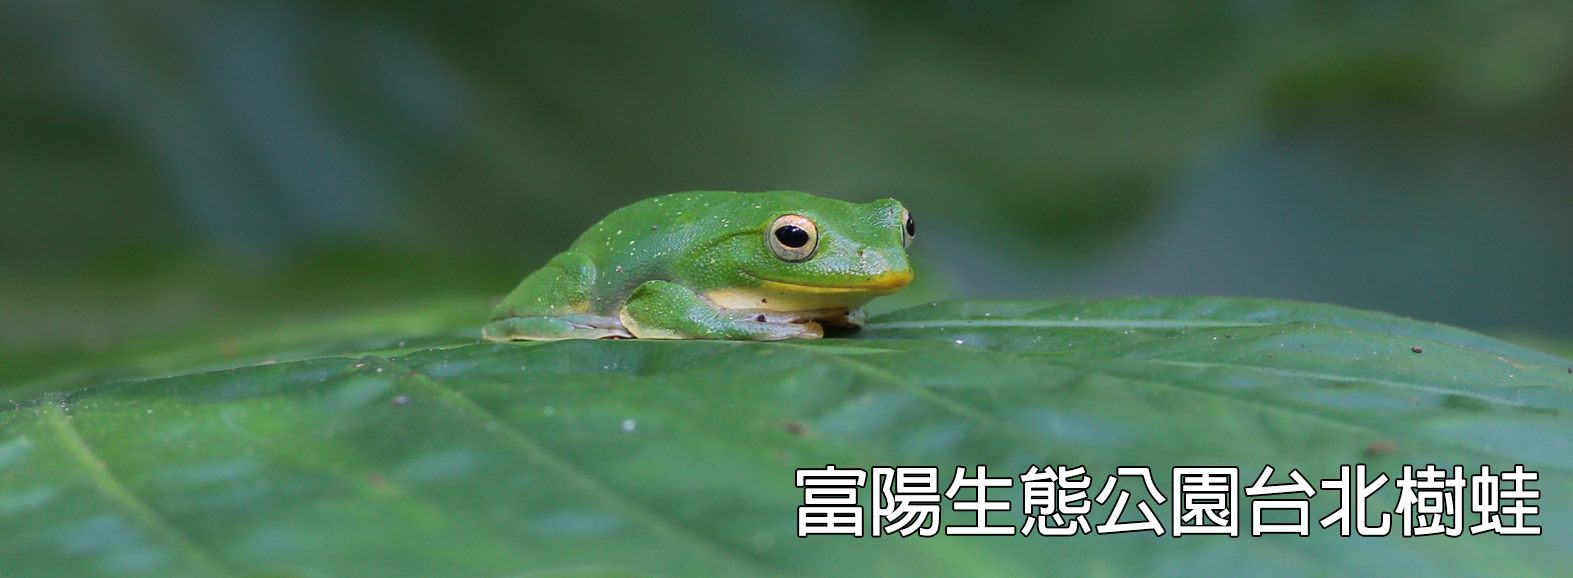 富陽生態公園台北樹蛙